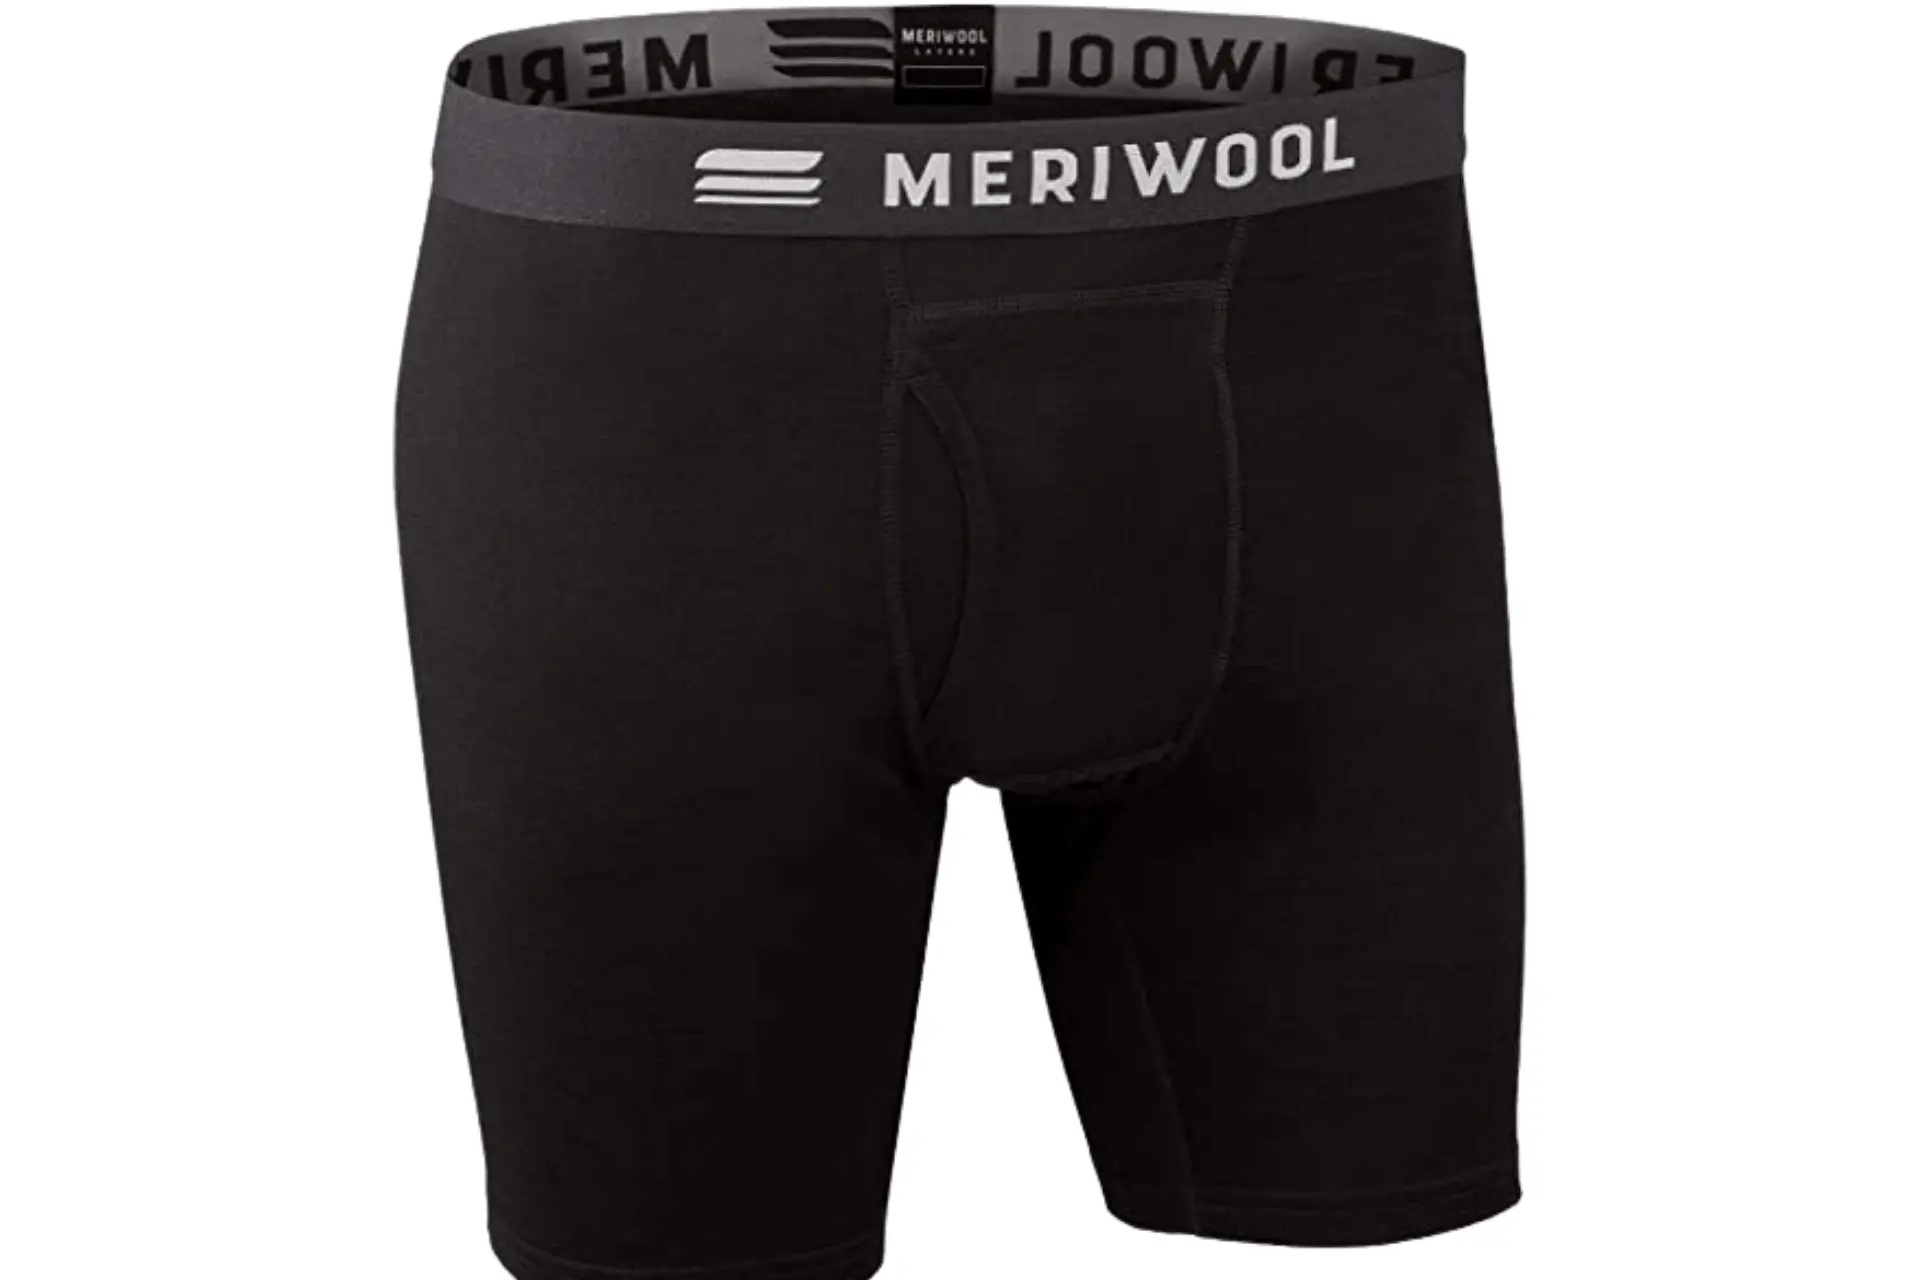 MERIWOOL Men’s Boxer Briefs